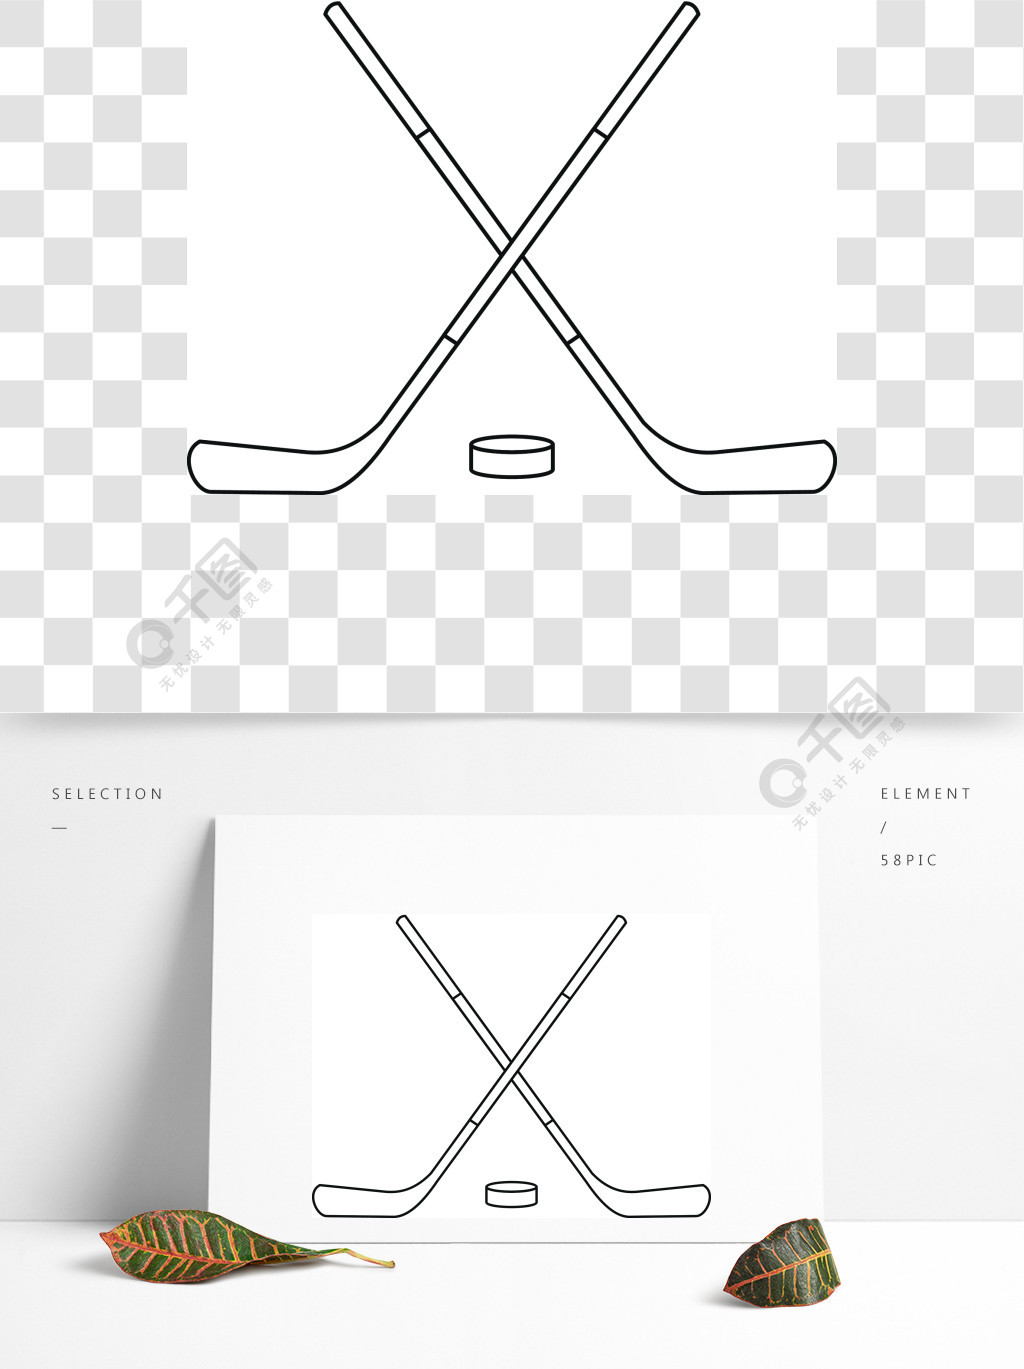 曲棍球棒和冰球图标概述曲棍球棒和冰球矢量图标为web的插图曲棍球棍